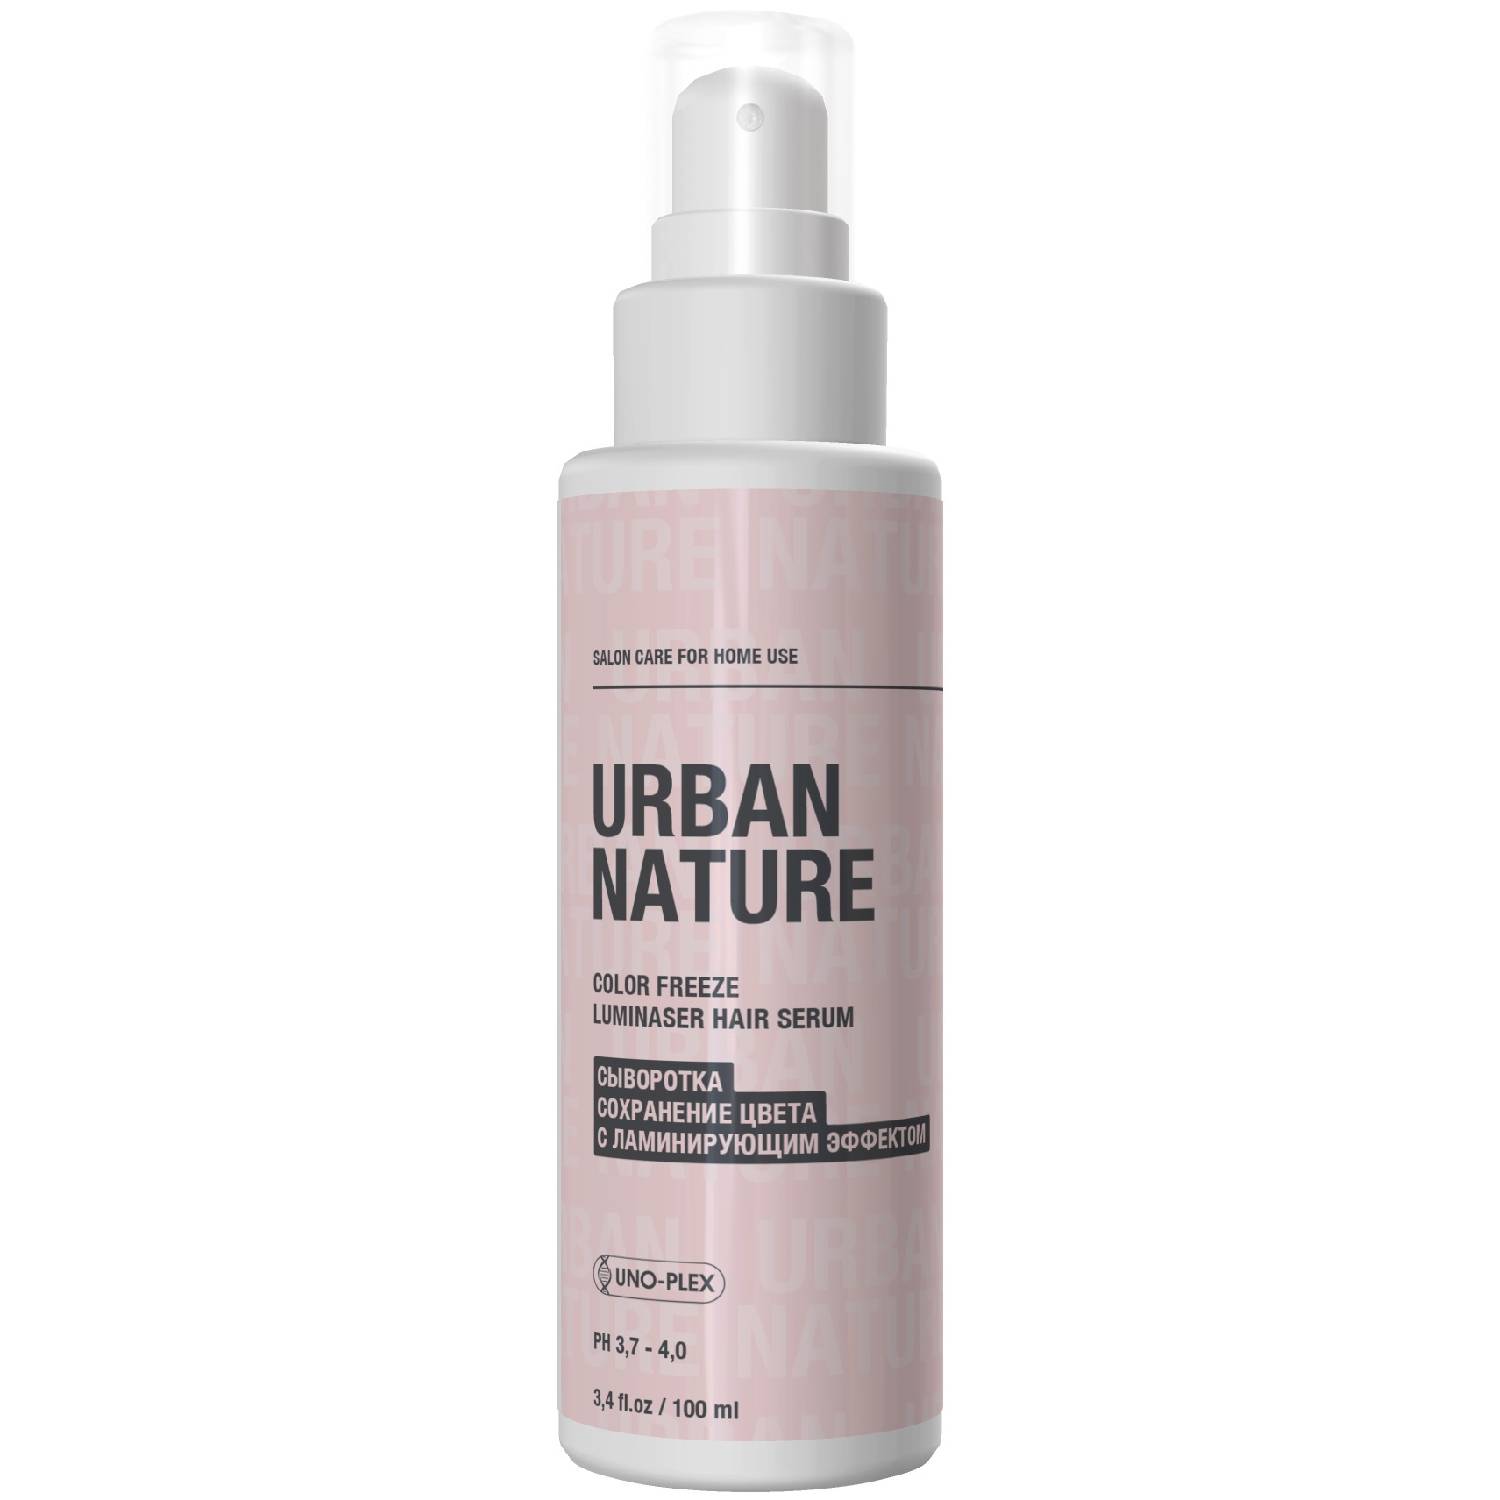 Urban Nature Сыворотка с ламинирующим эффектом для сохранения цвета волос, 100 мл (Urban Nature, Color Freeze)